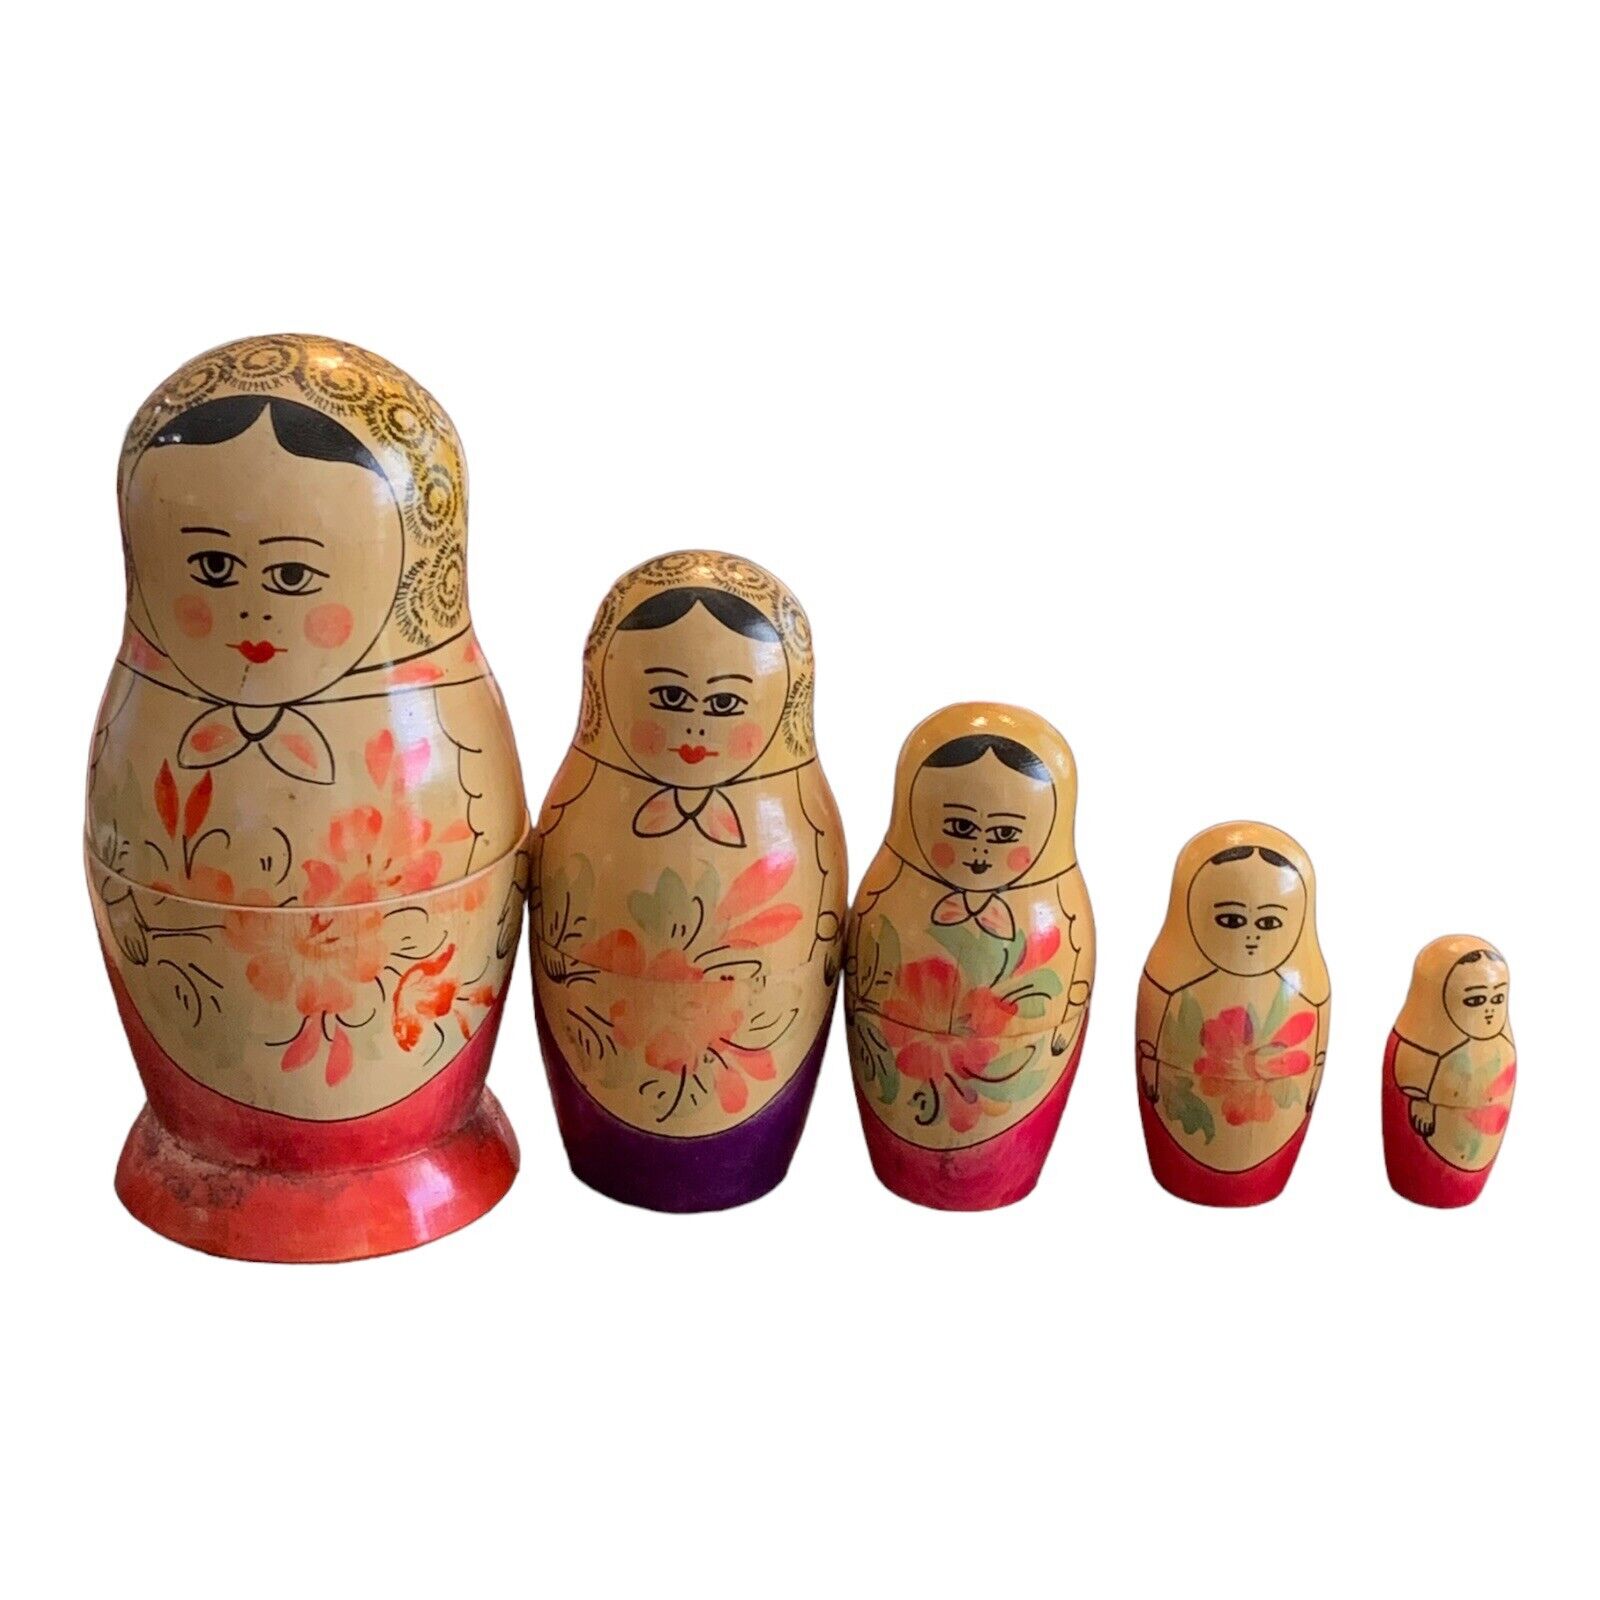 Vtg 5 Pc  Russian Nesting Wood Dolls “Matryoshkaen” Tallest Doll Is 6 1/2” Tall